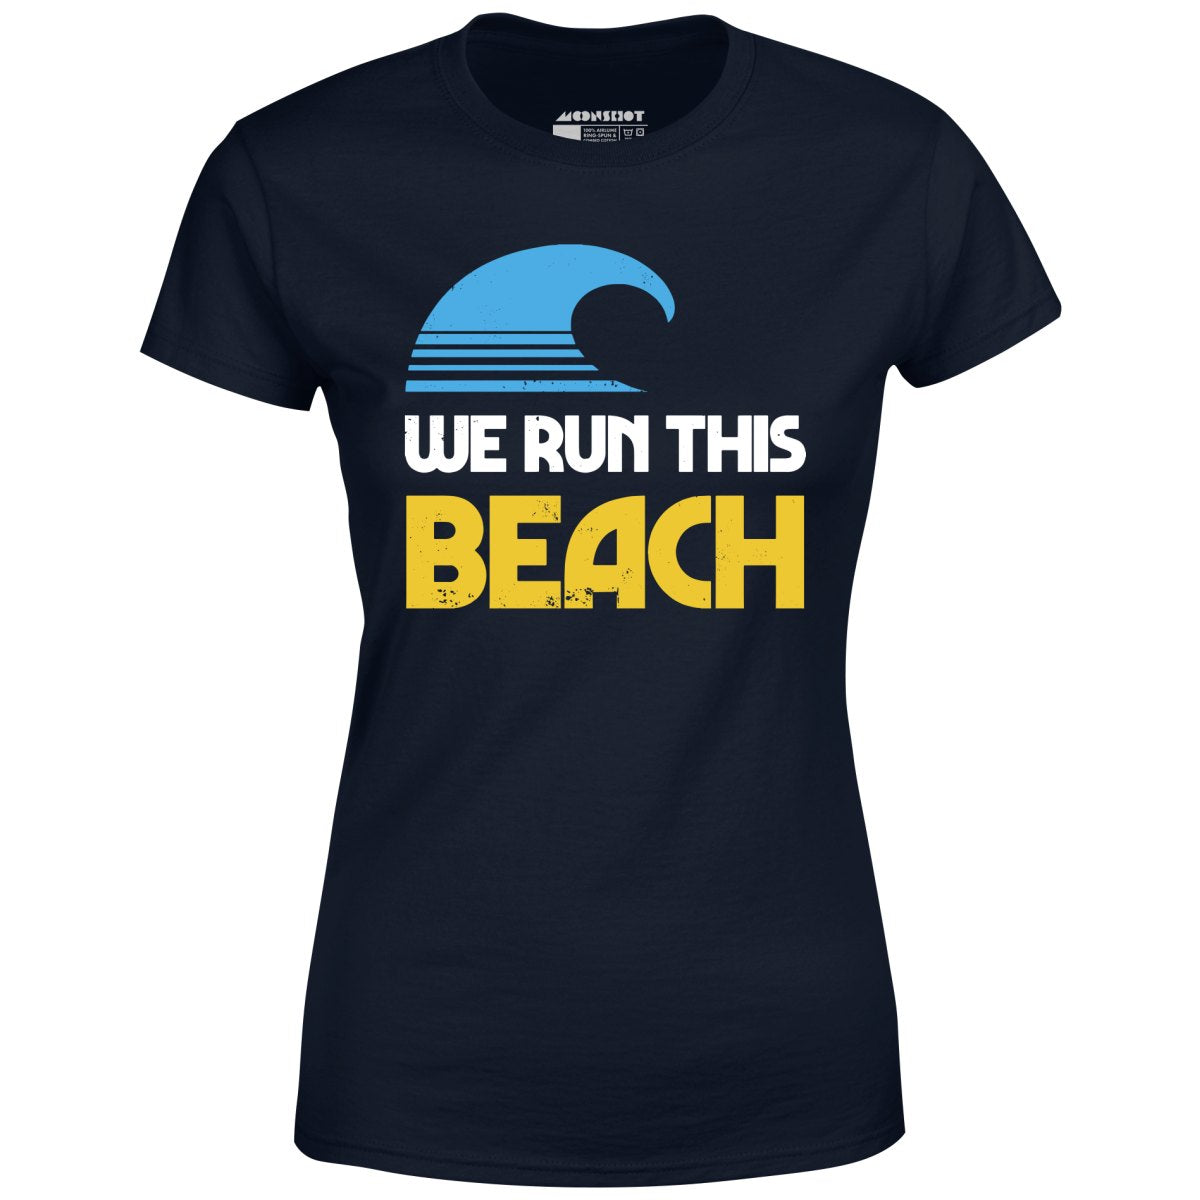 We Run This Beach - Women's T-Shirt